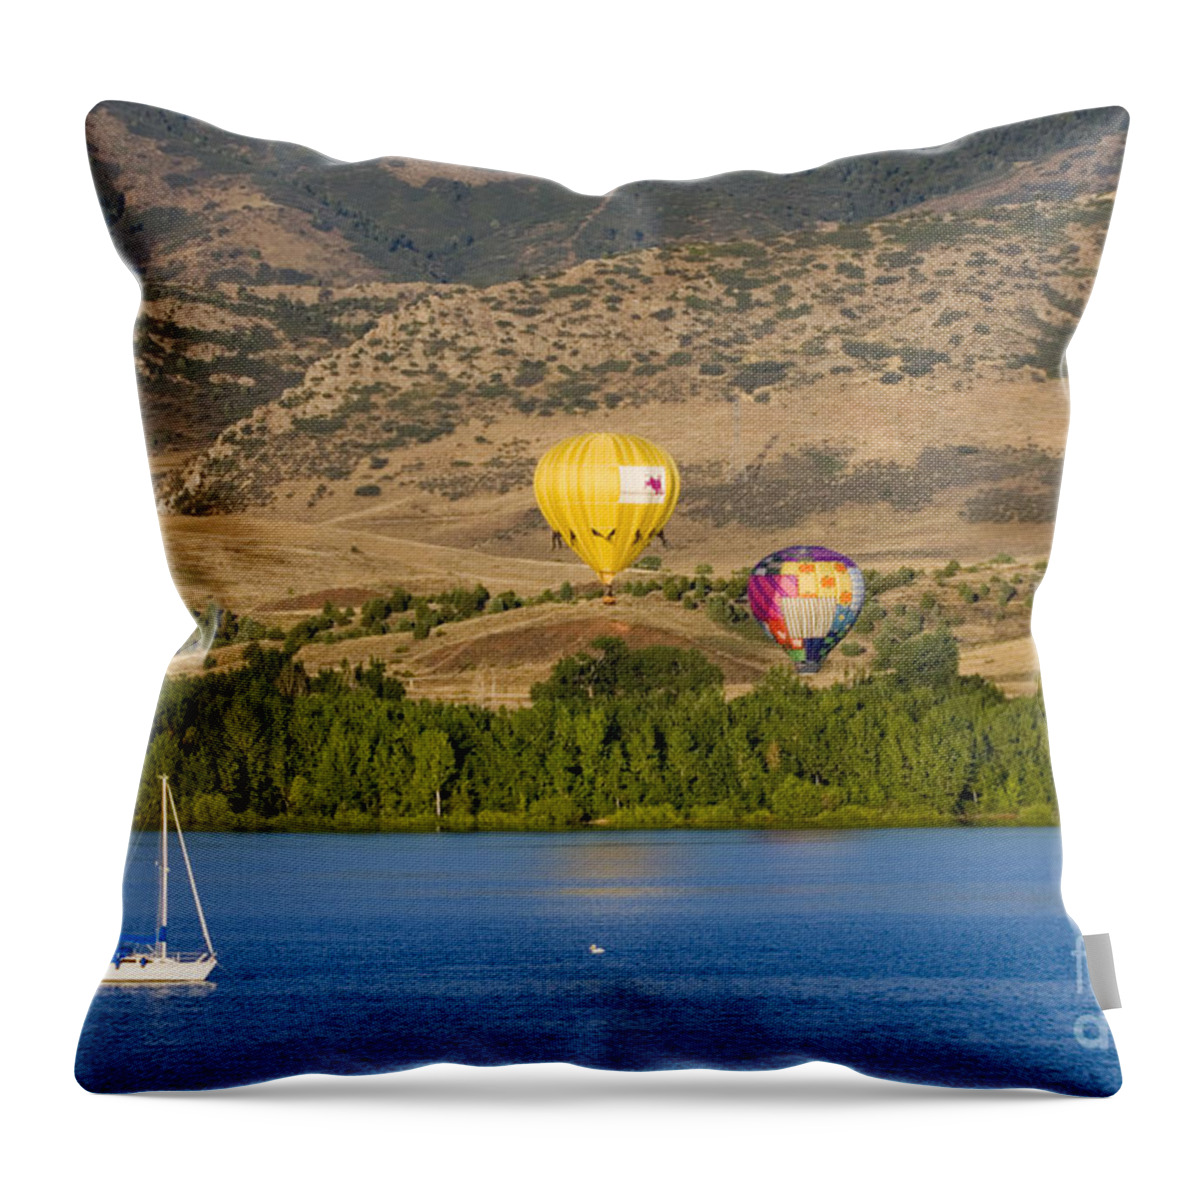 Colorado Throw Pillow featuring the photograph Rocky Mountain Balloon Festival #3 by Steven Krull